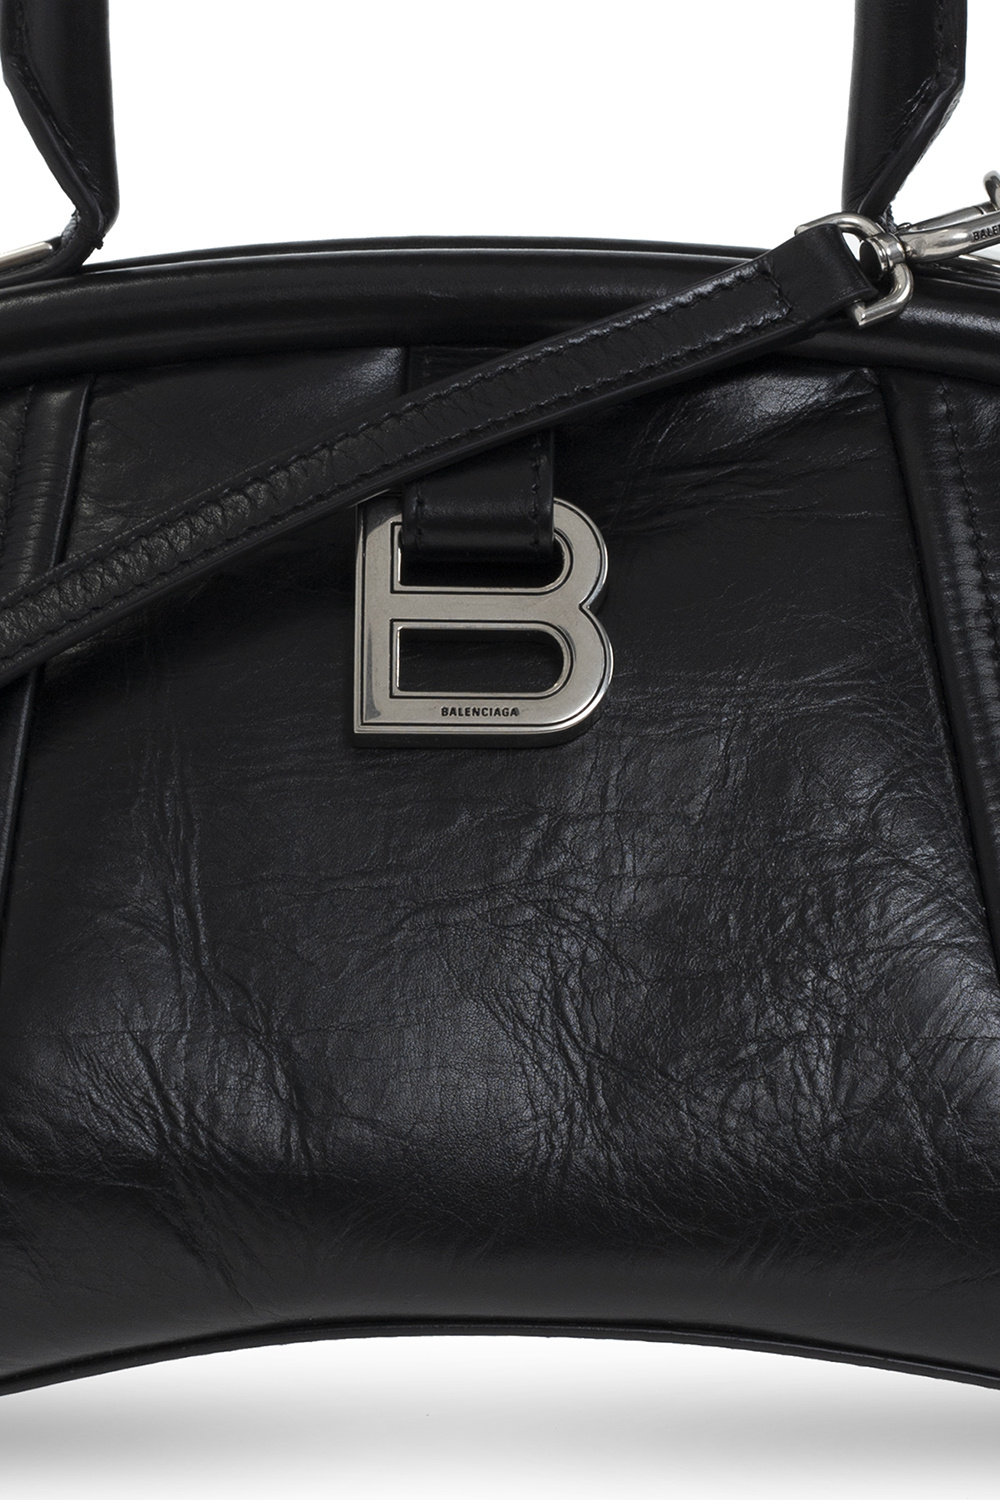 Balenciaga ‘Editor Small’ shoulder bag